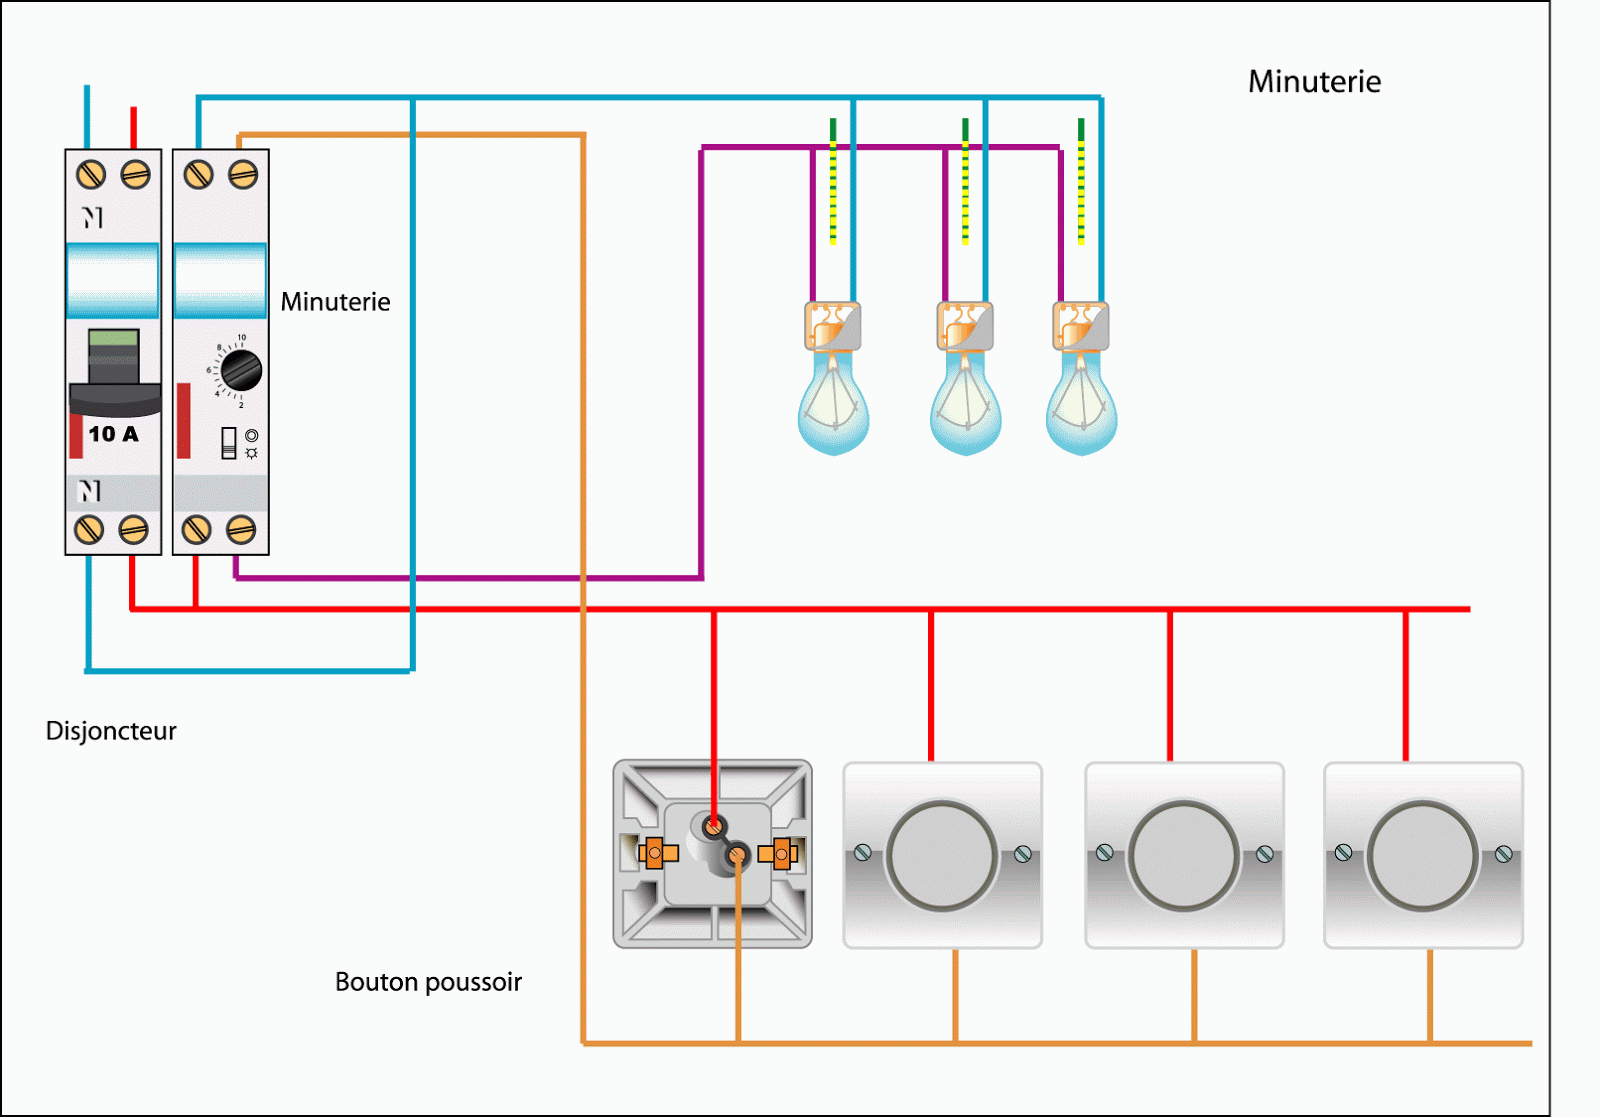 schémas électricité maison schéma électrique de la minuterie